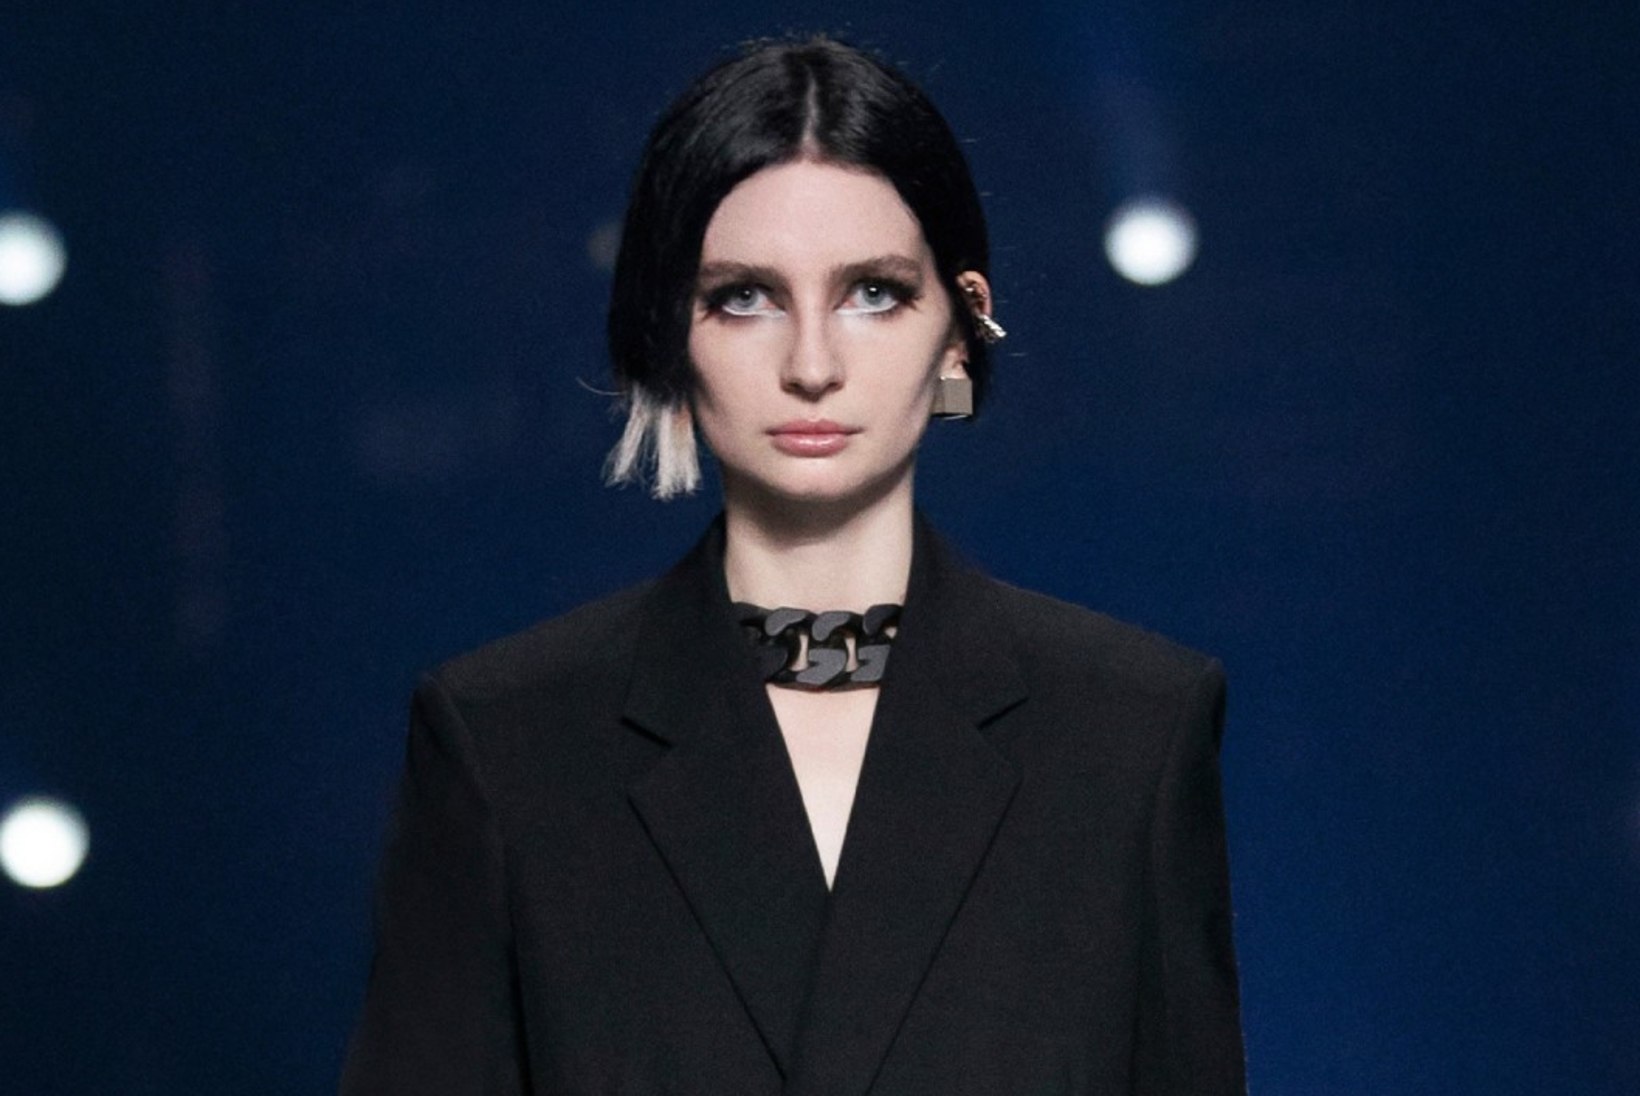 Traagiliselt surnud näitleja tütar osales Givenchy moedemonstratsioonil